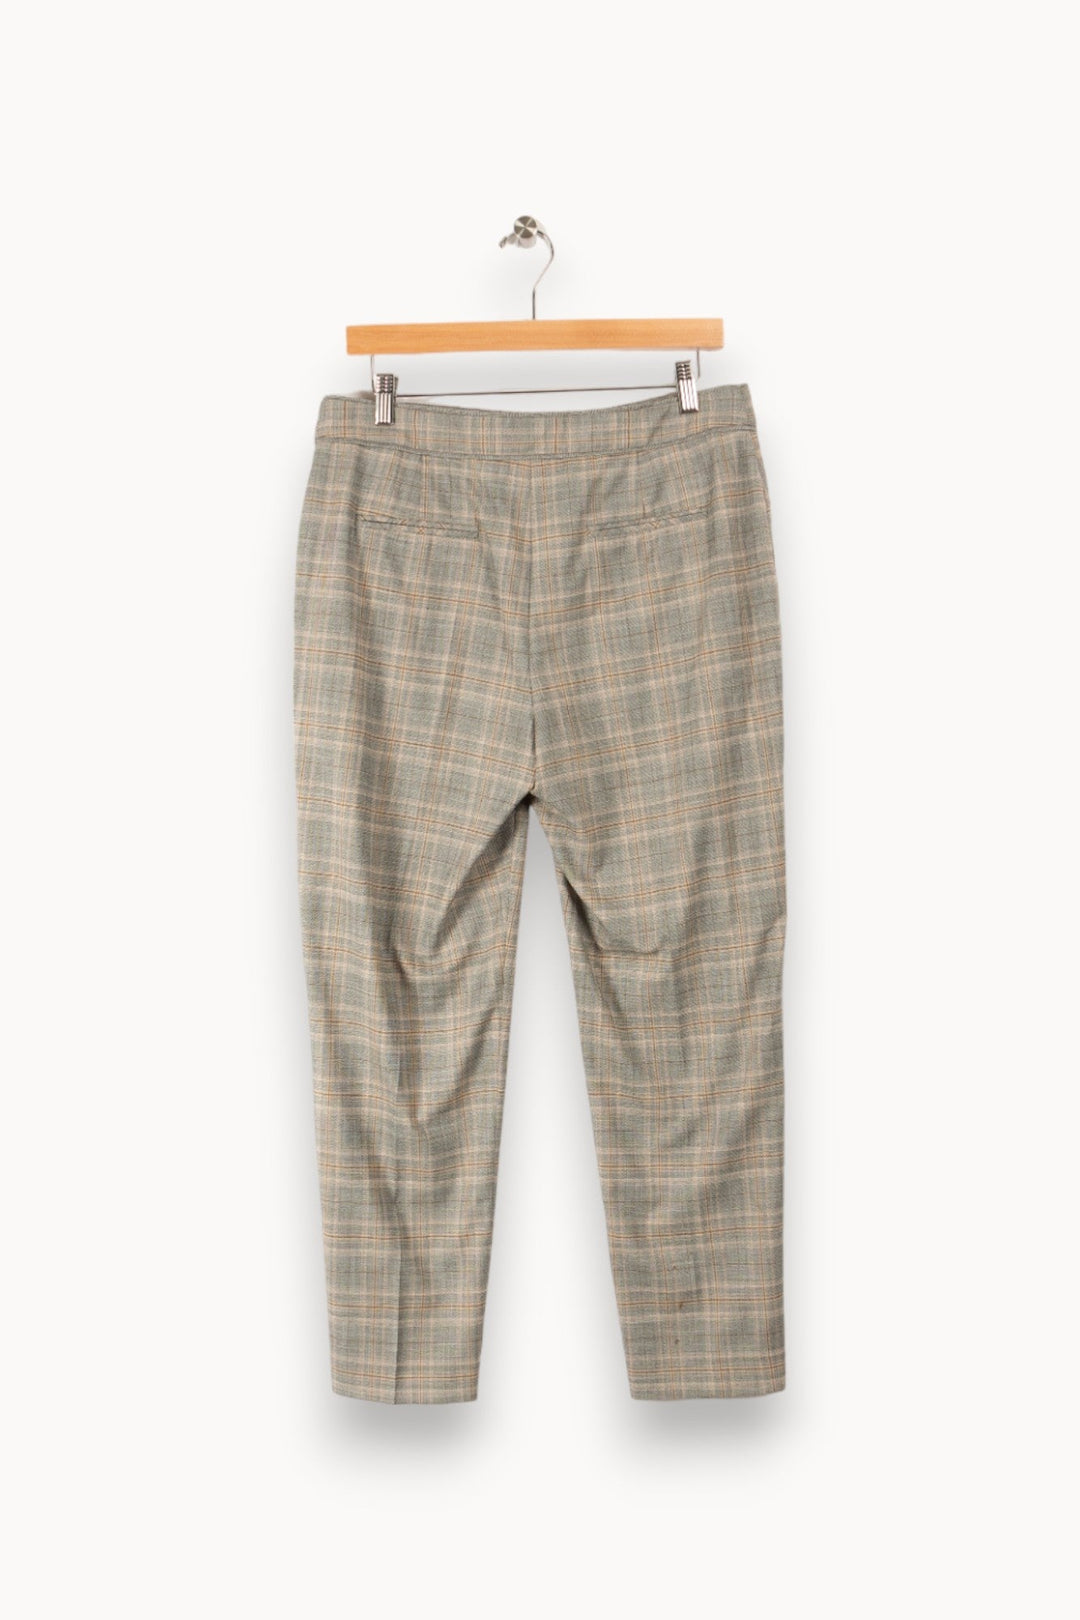 Pantalon gris - XL/42